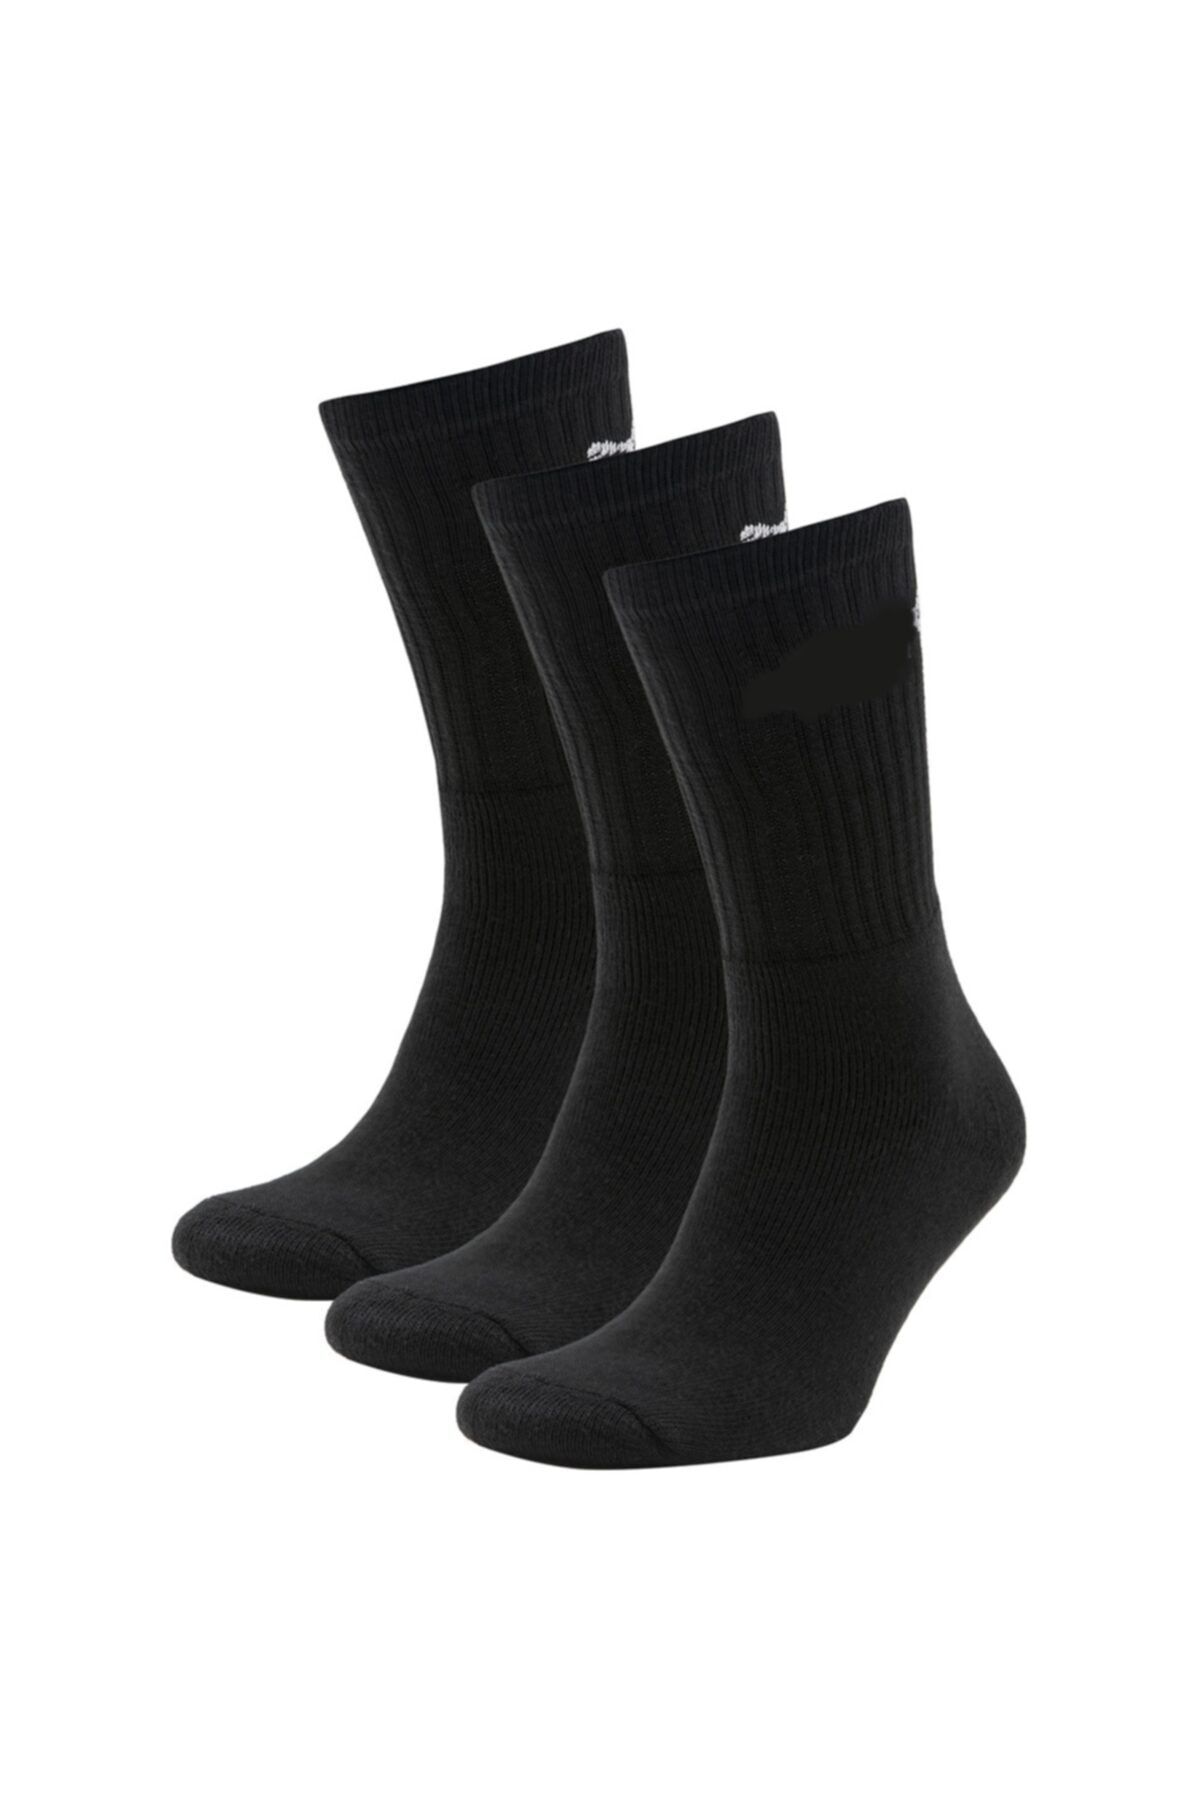 MEFKURE STORE Unisex Siyah Fitness Salon Çorabı Koşu Antrenman Çorabı 3'lü